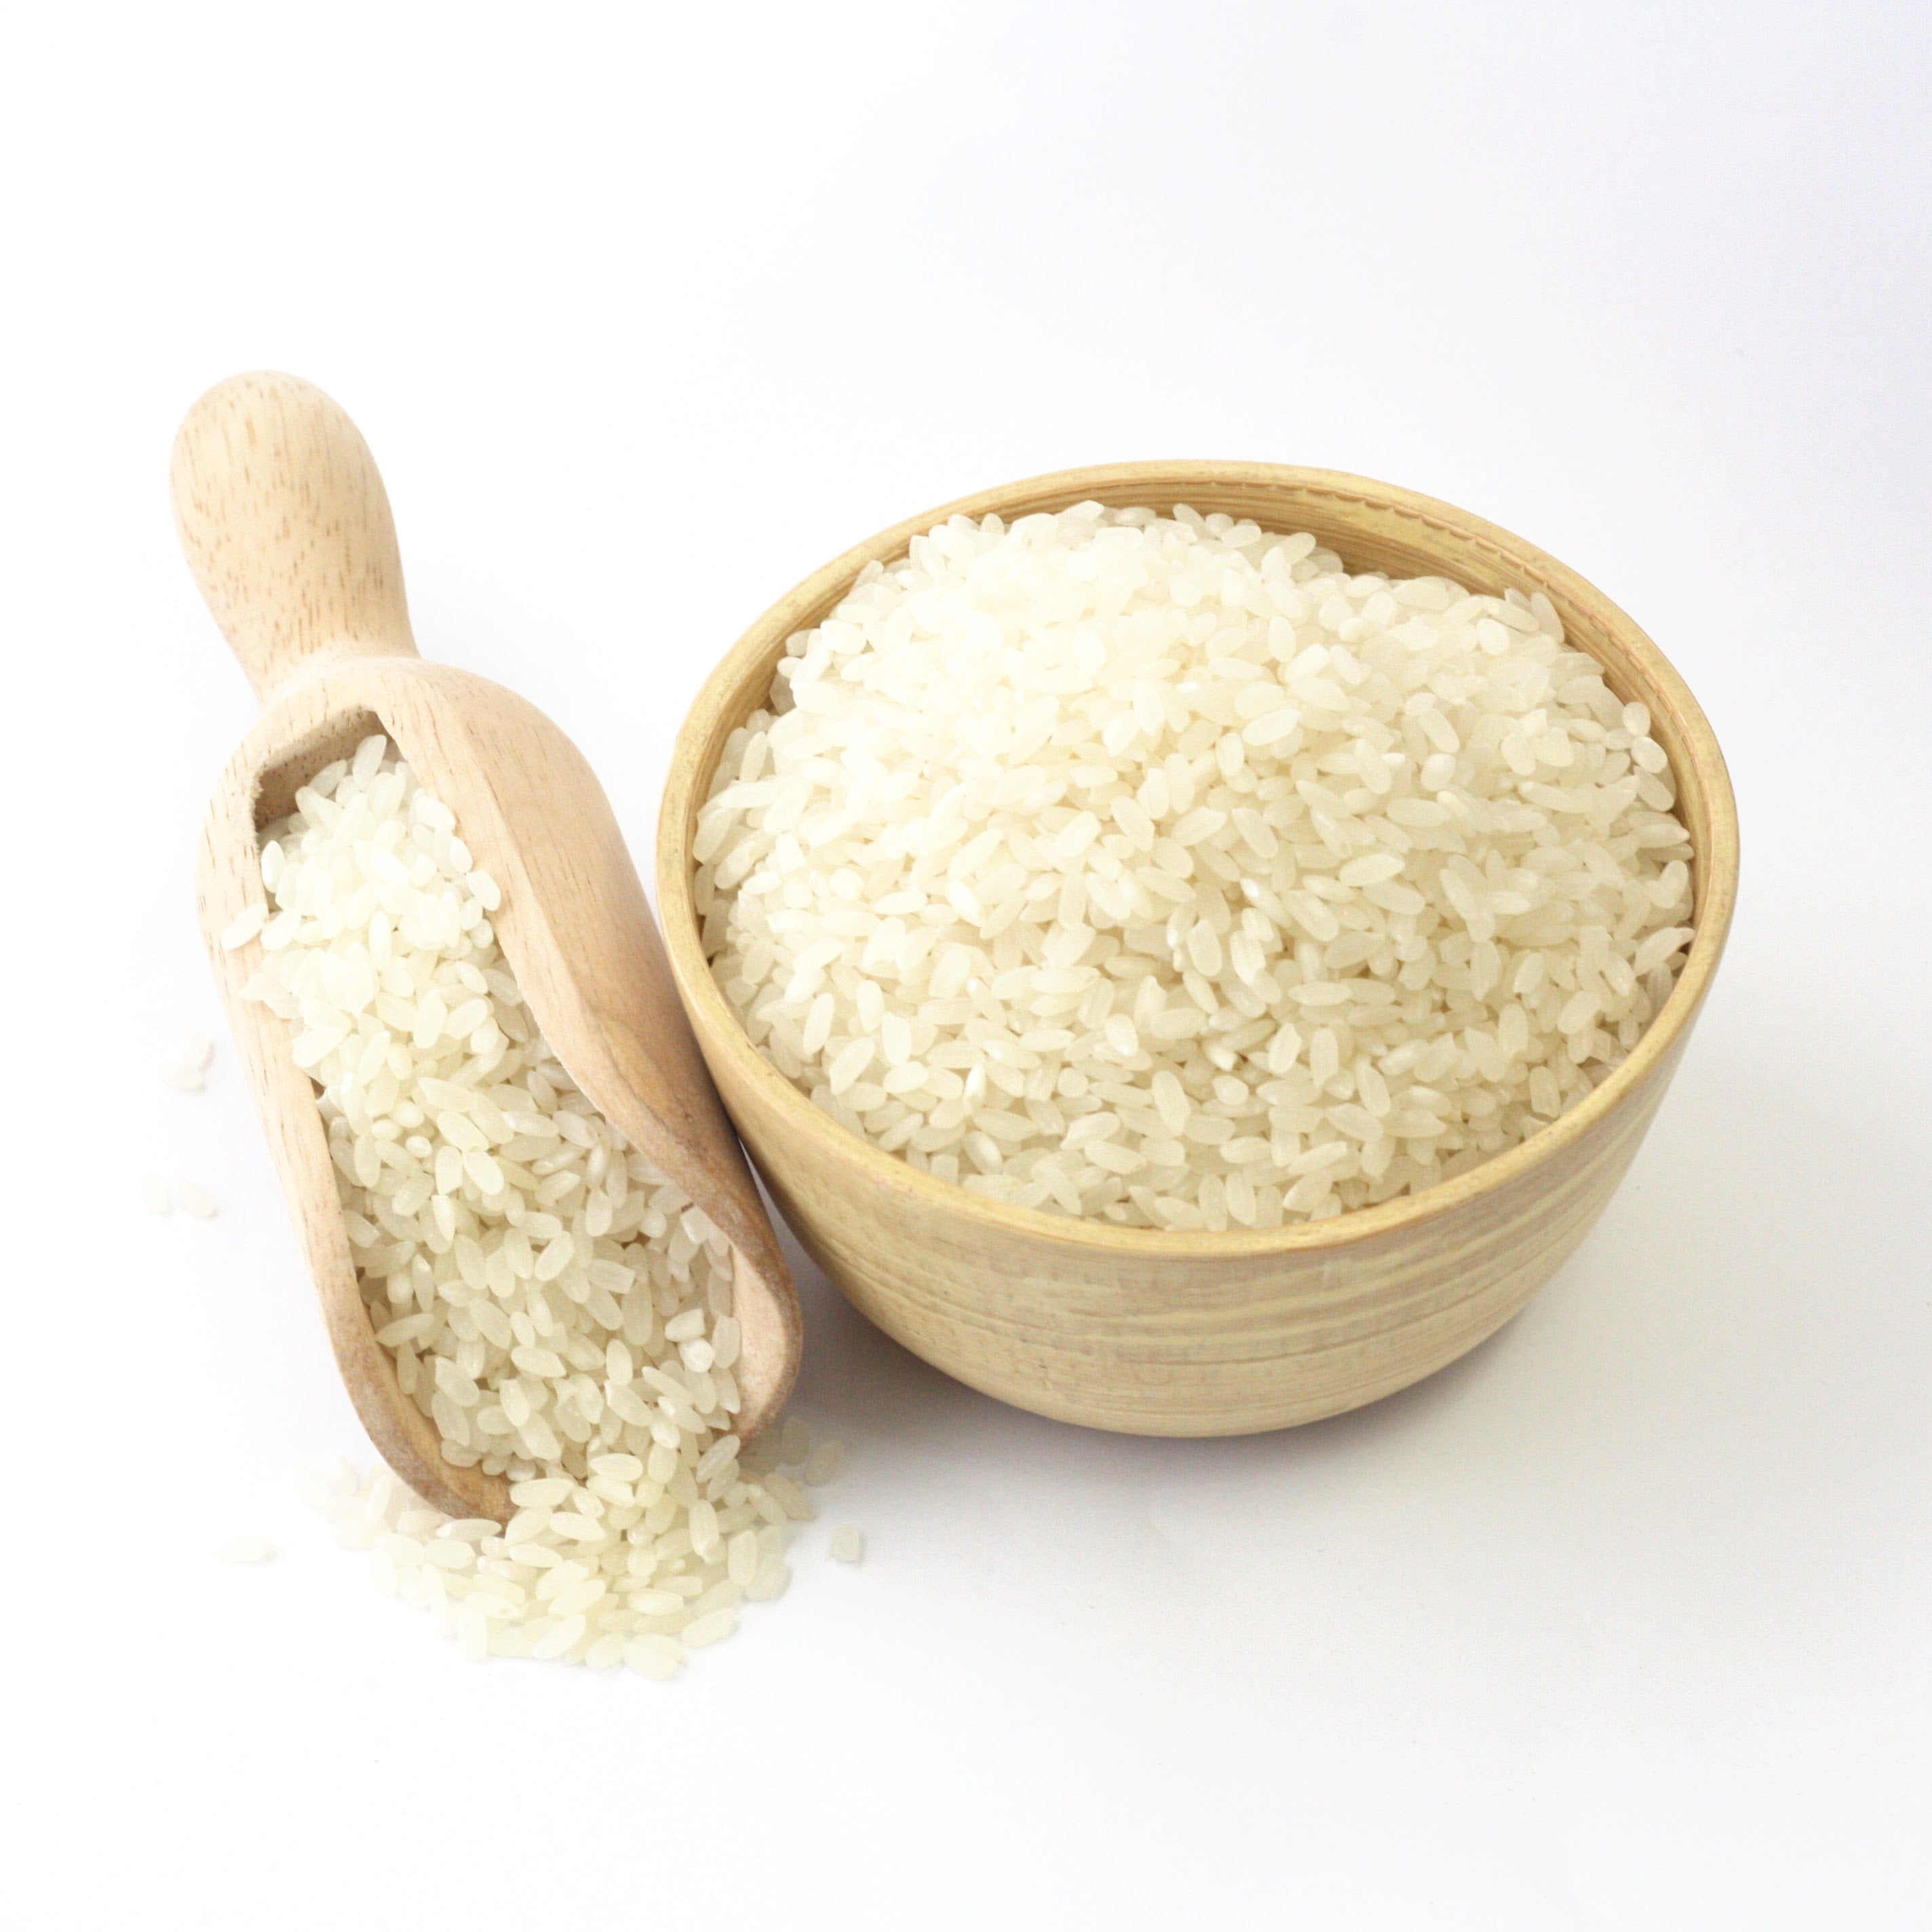 White Rice Medium Grain - Calrose